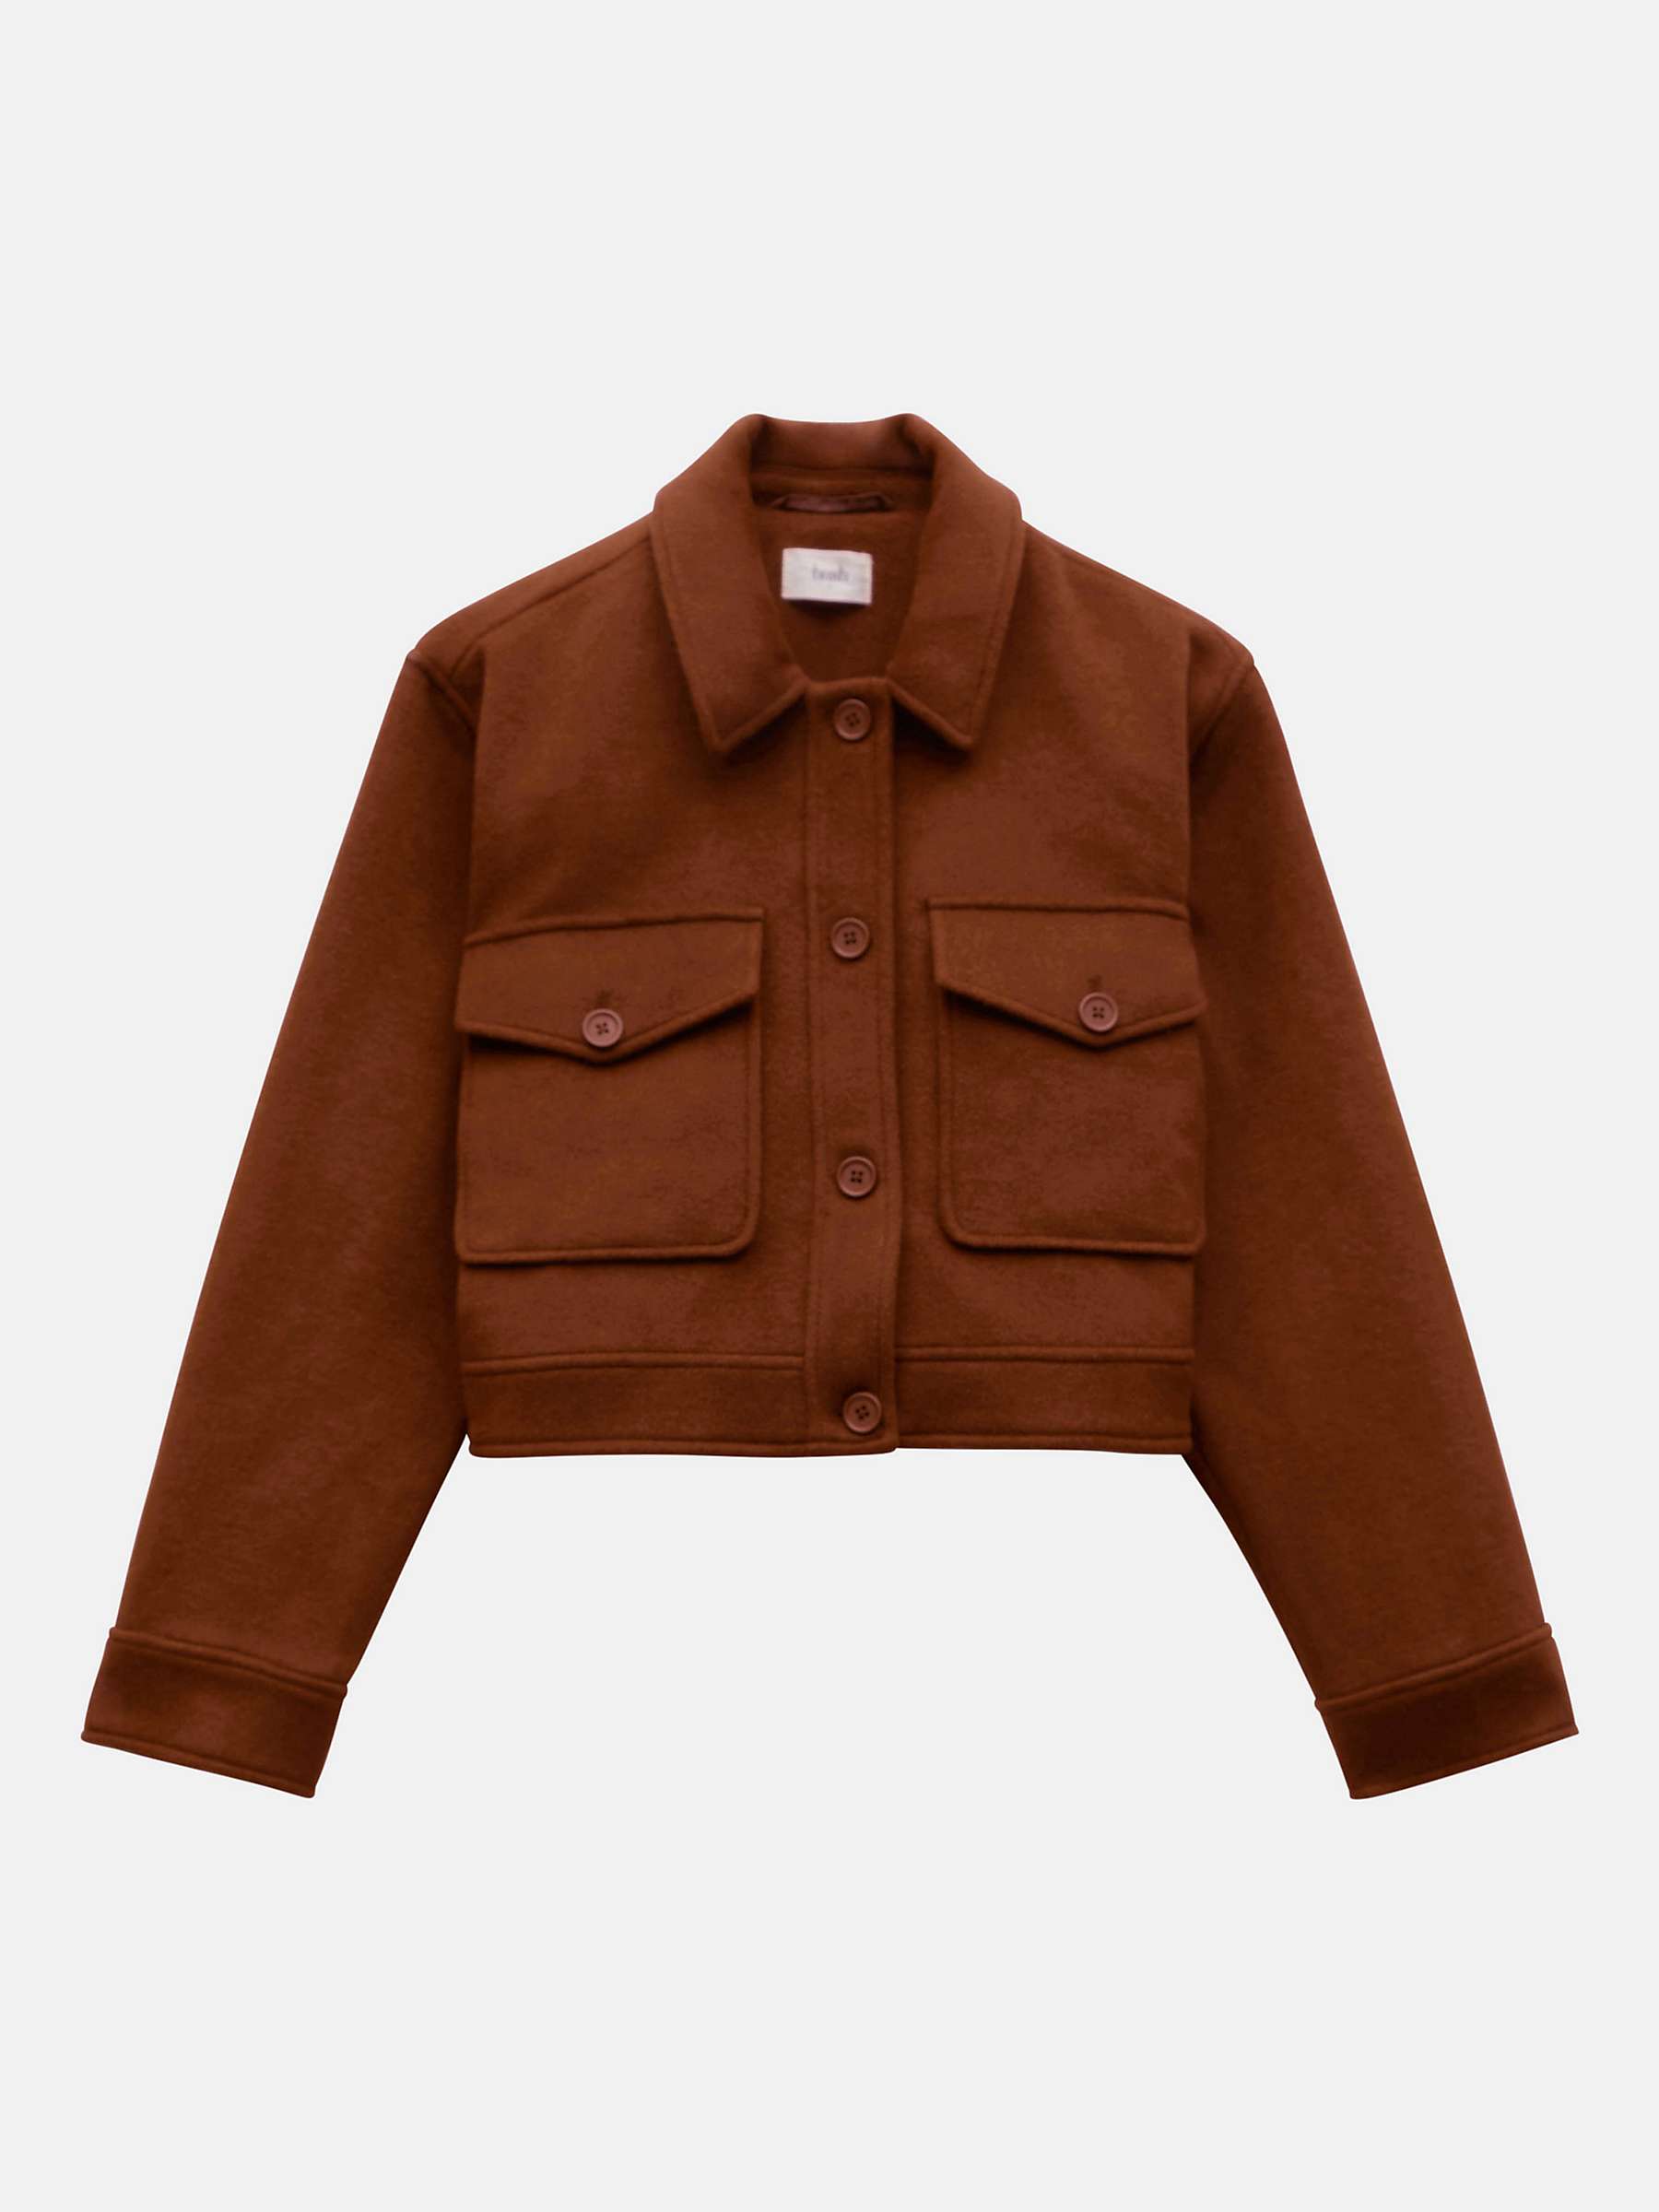 Buy HUSH Taylah Wool Blend Cropped Jacket Online at johnlewis.com